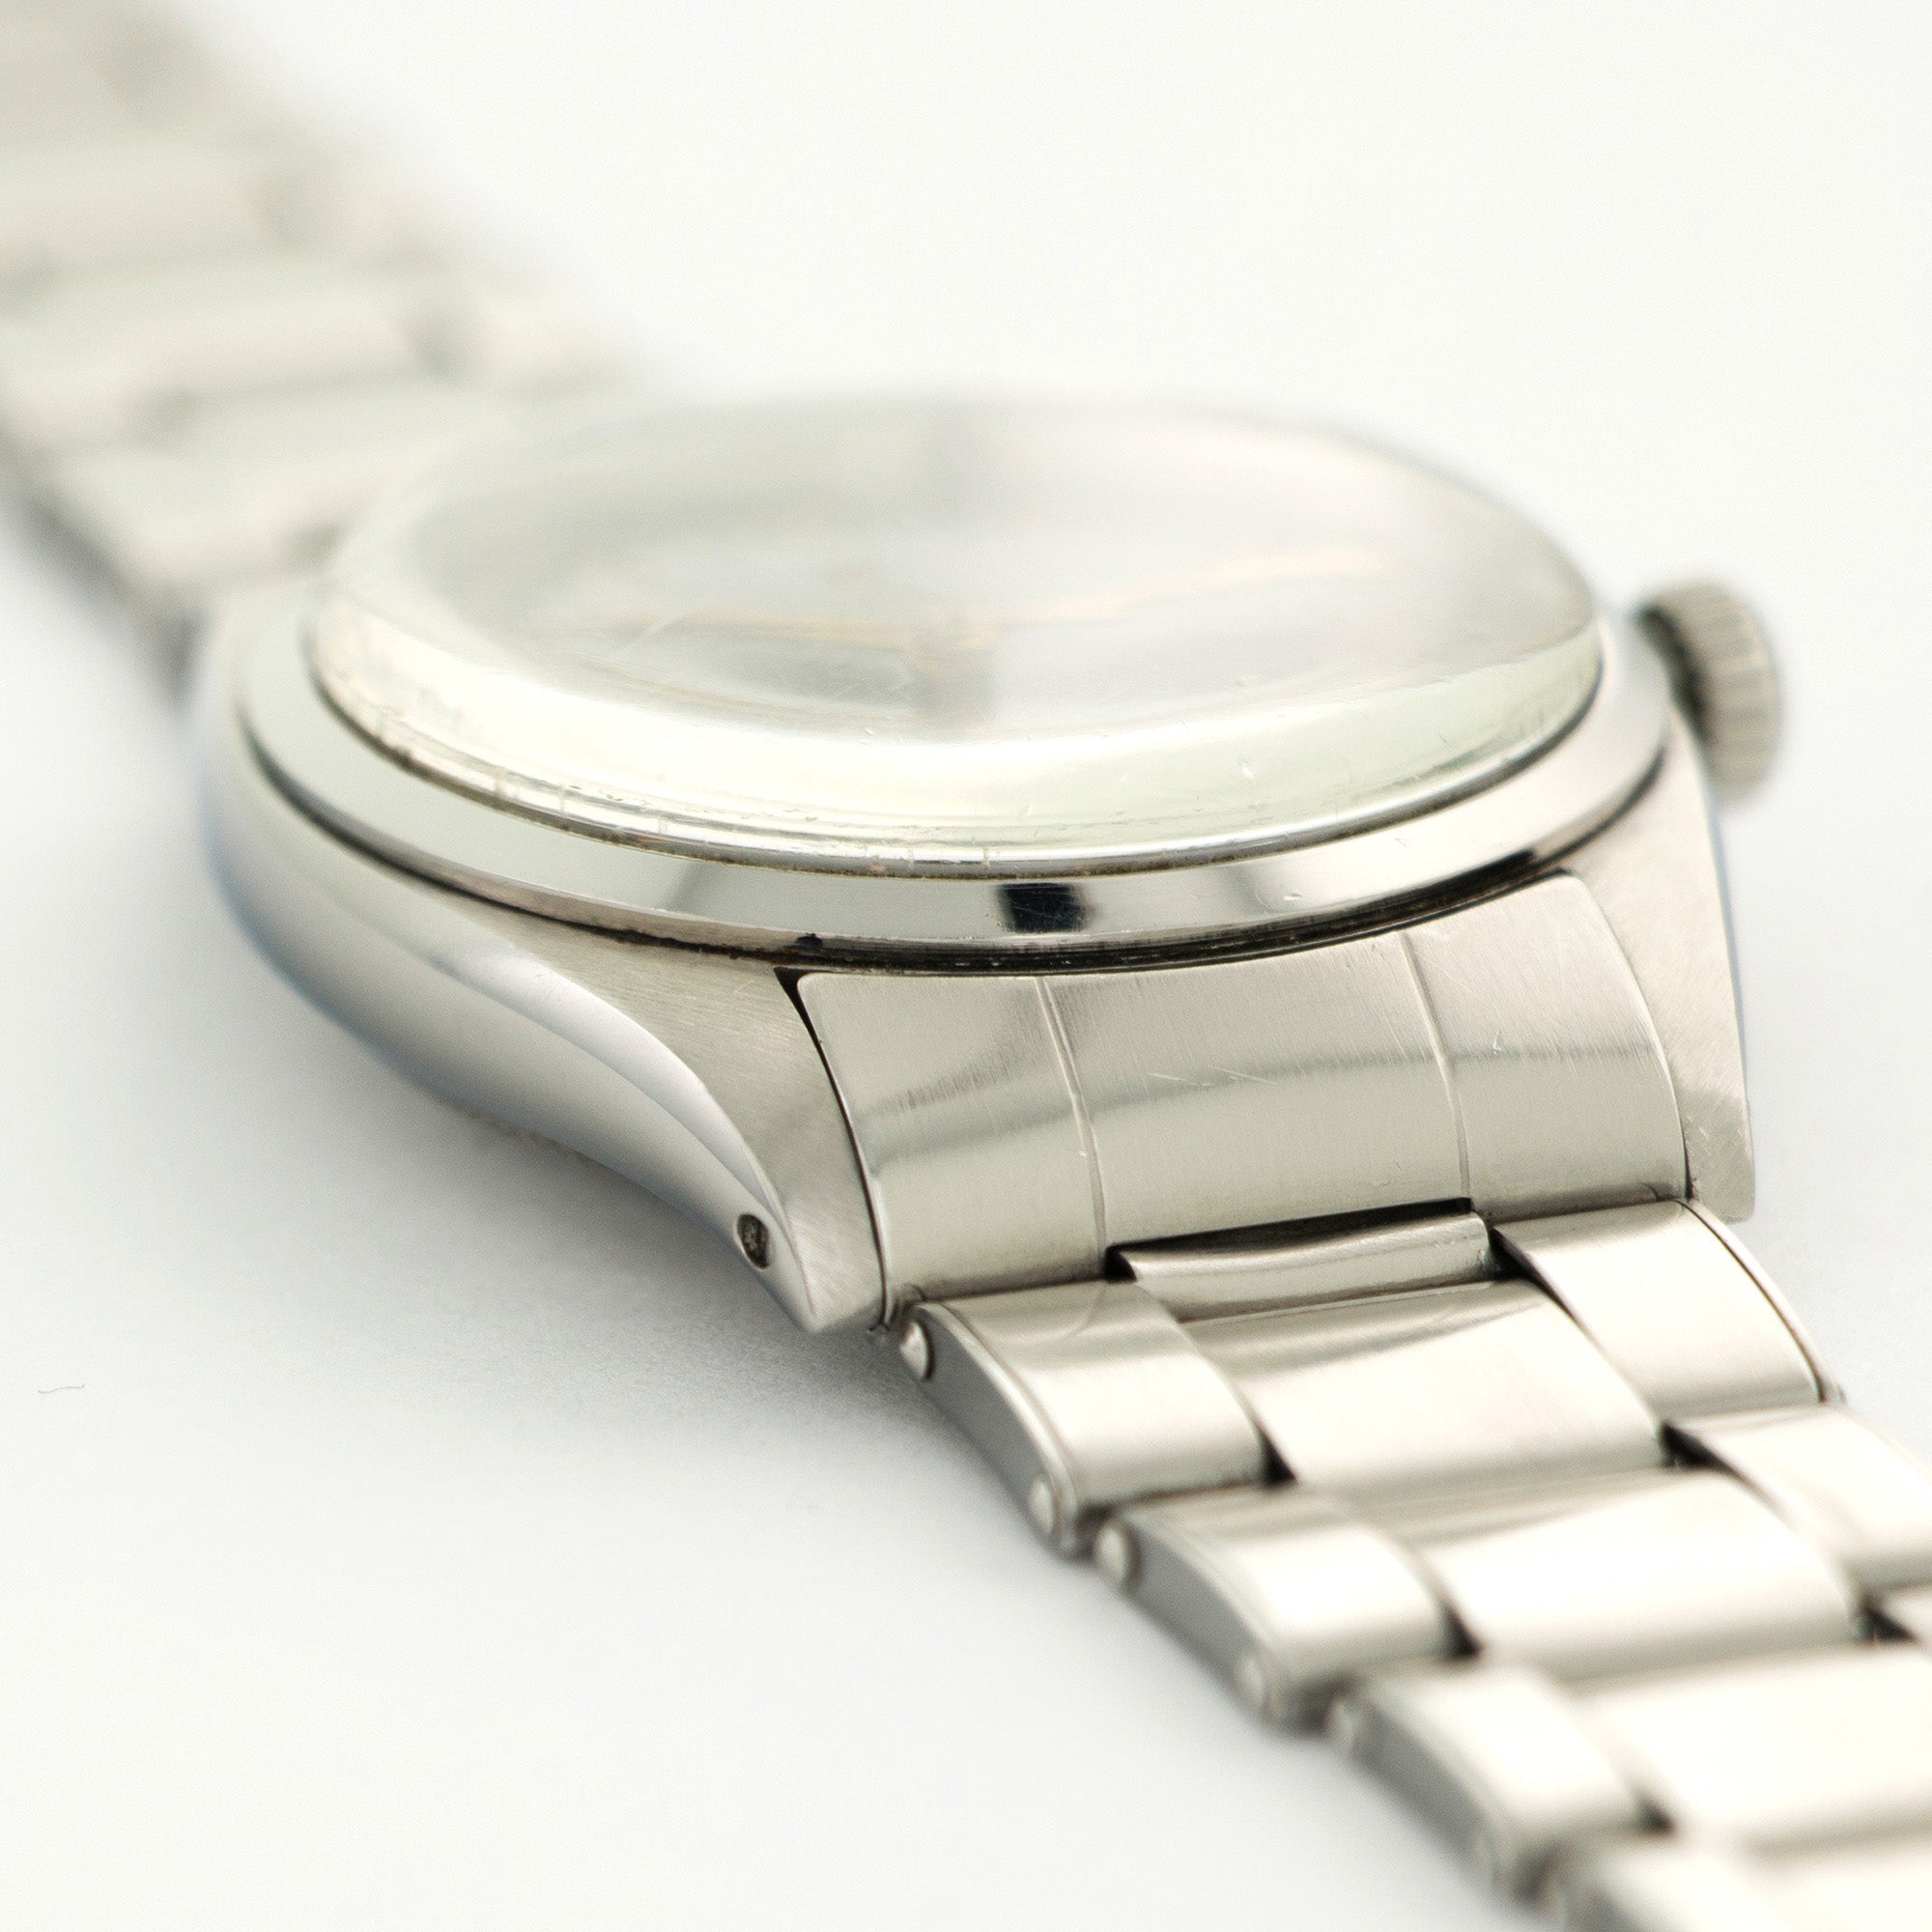 Rolex - Rolex Stainless Steel Explorer Black Gilt Ref. 6352 - The Keystone Watches